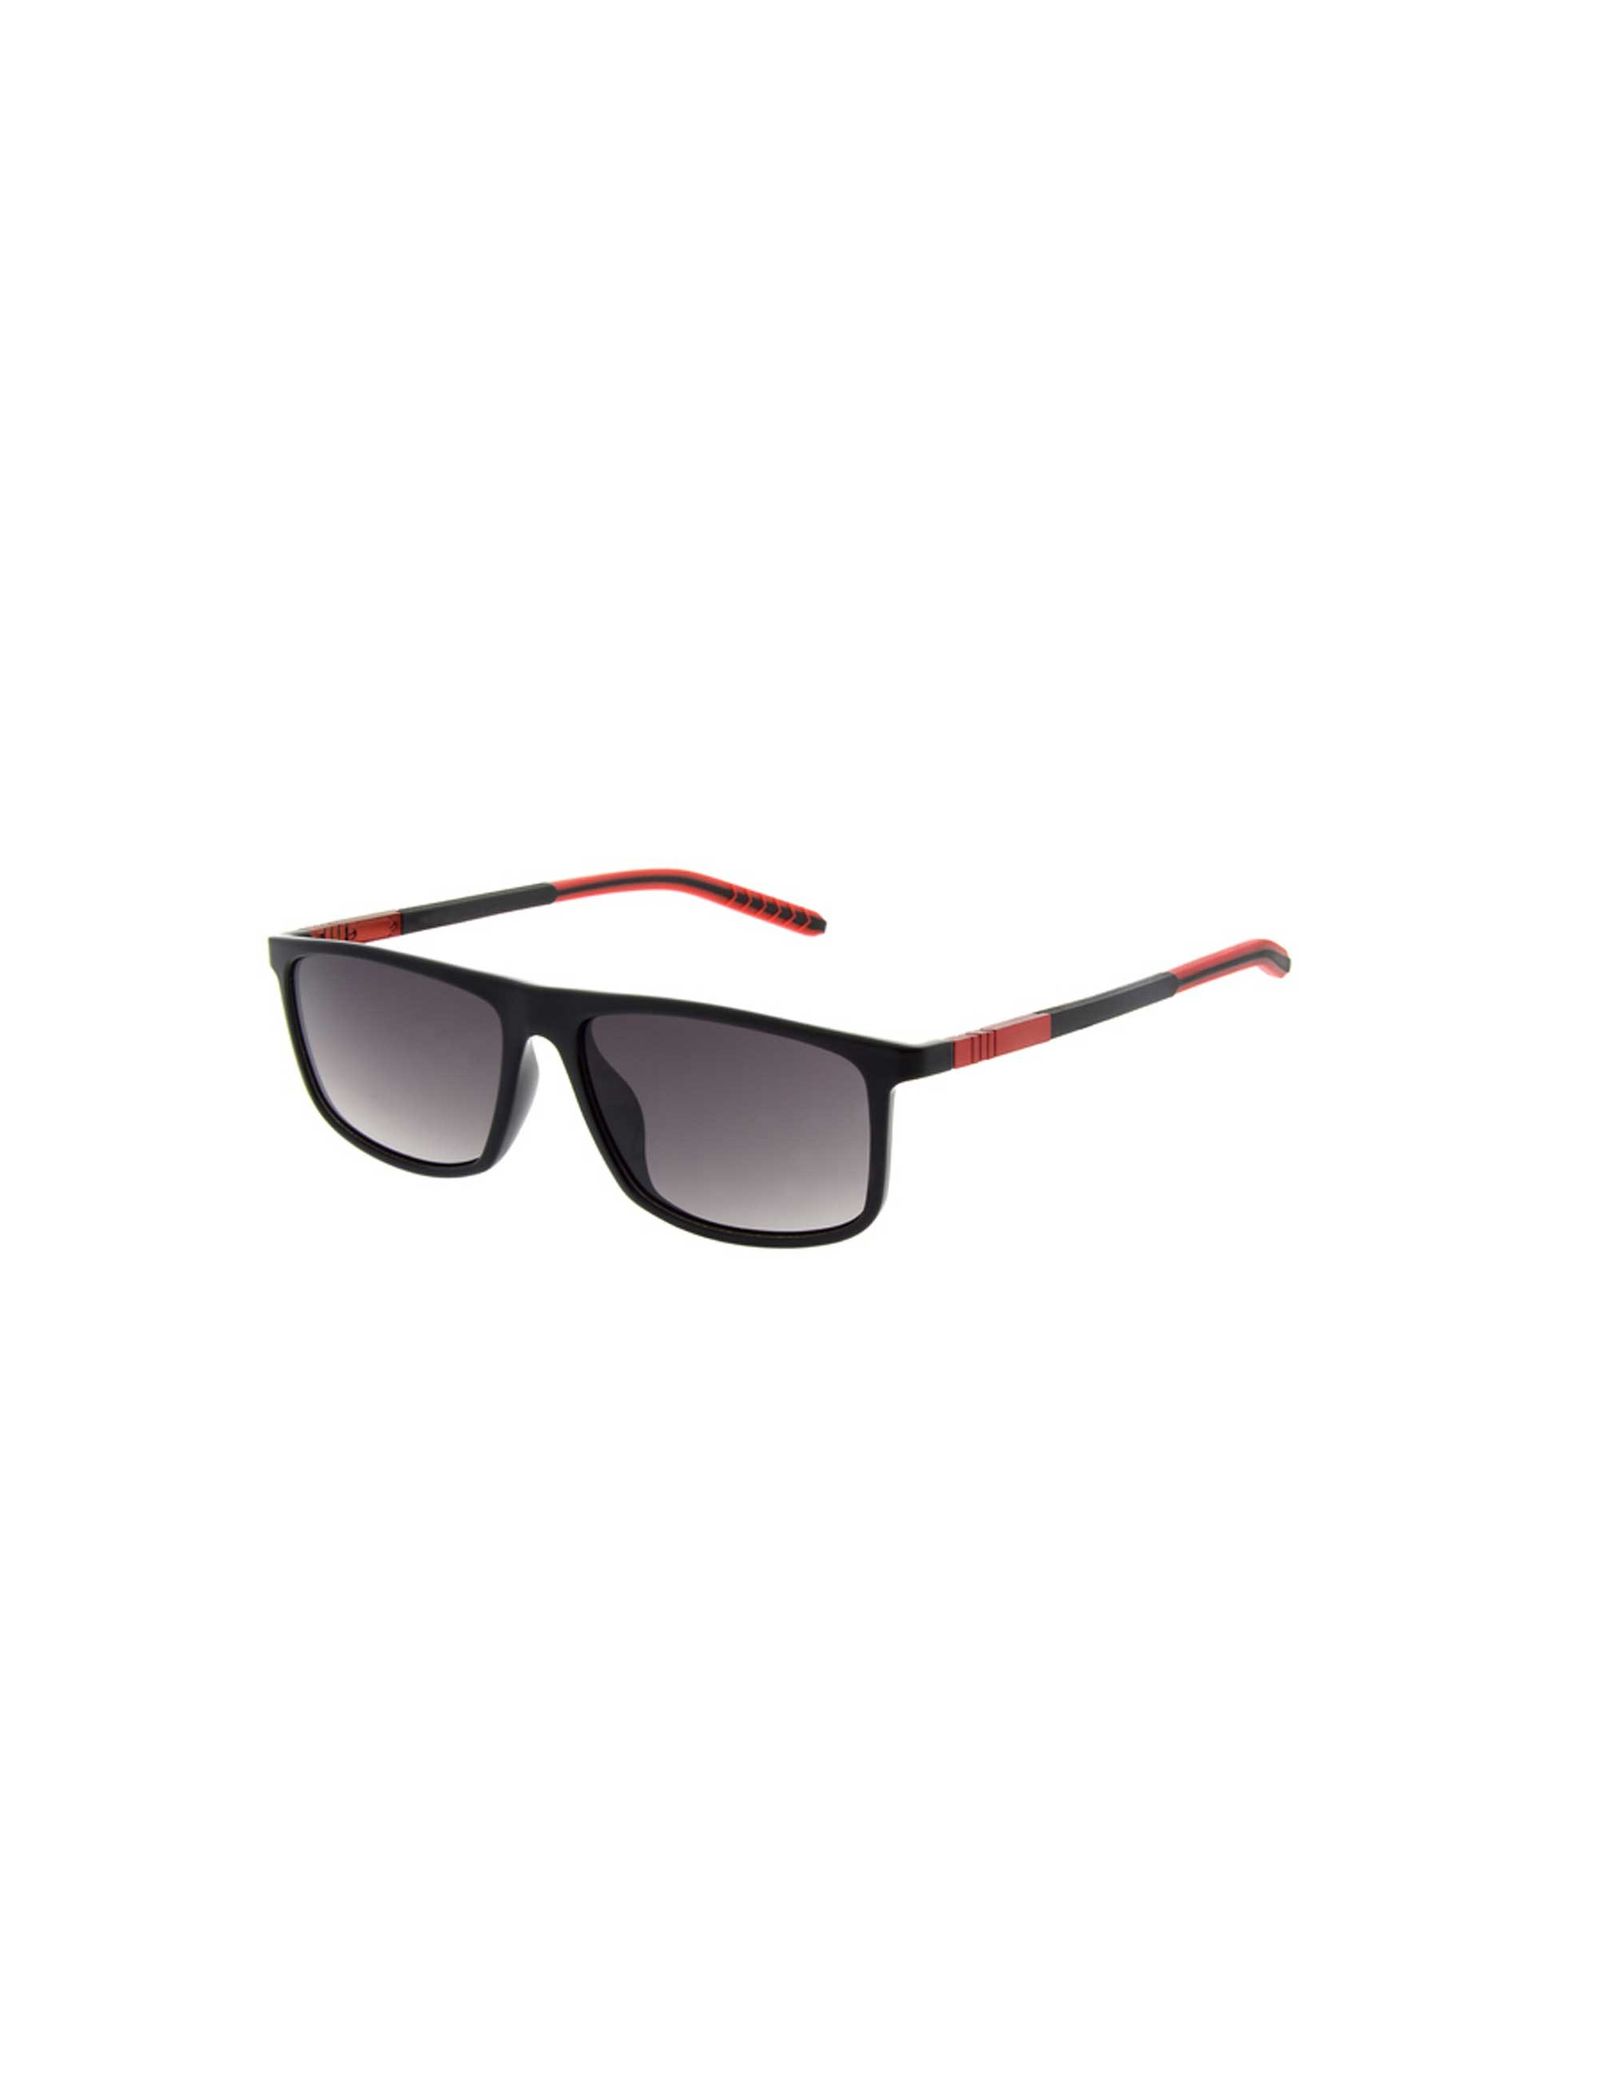 عینک آفتابی ویفرر مردانه - اسپاین - مشکي/قرمز - 1